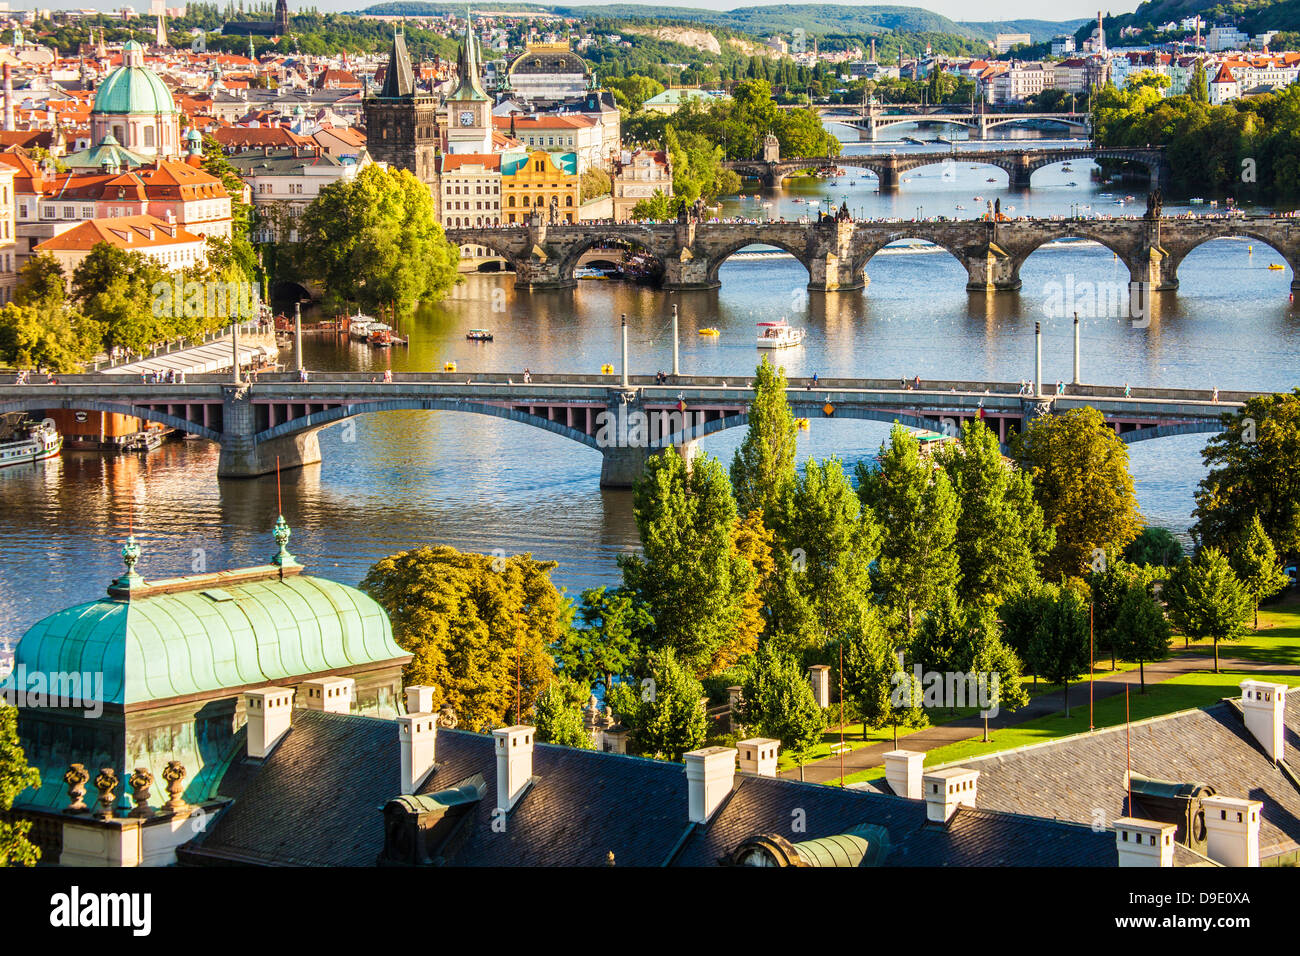 Blick auf Prag und Brücken über den Fluss Vltava (Moldau) Tschechien. Berühmte Karlsbrücke ist der zweite von unten. Stockfoto